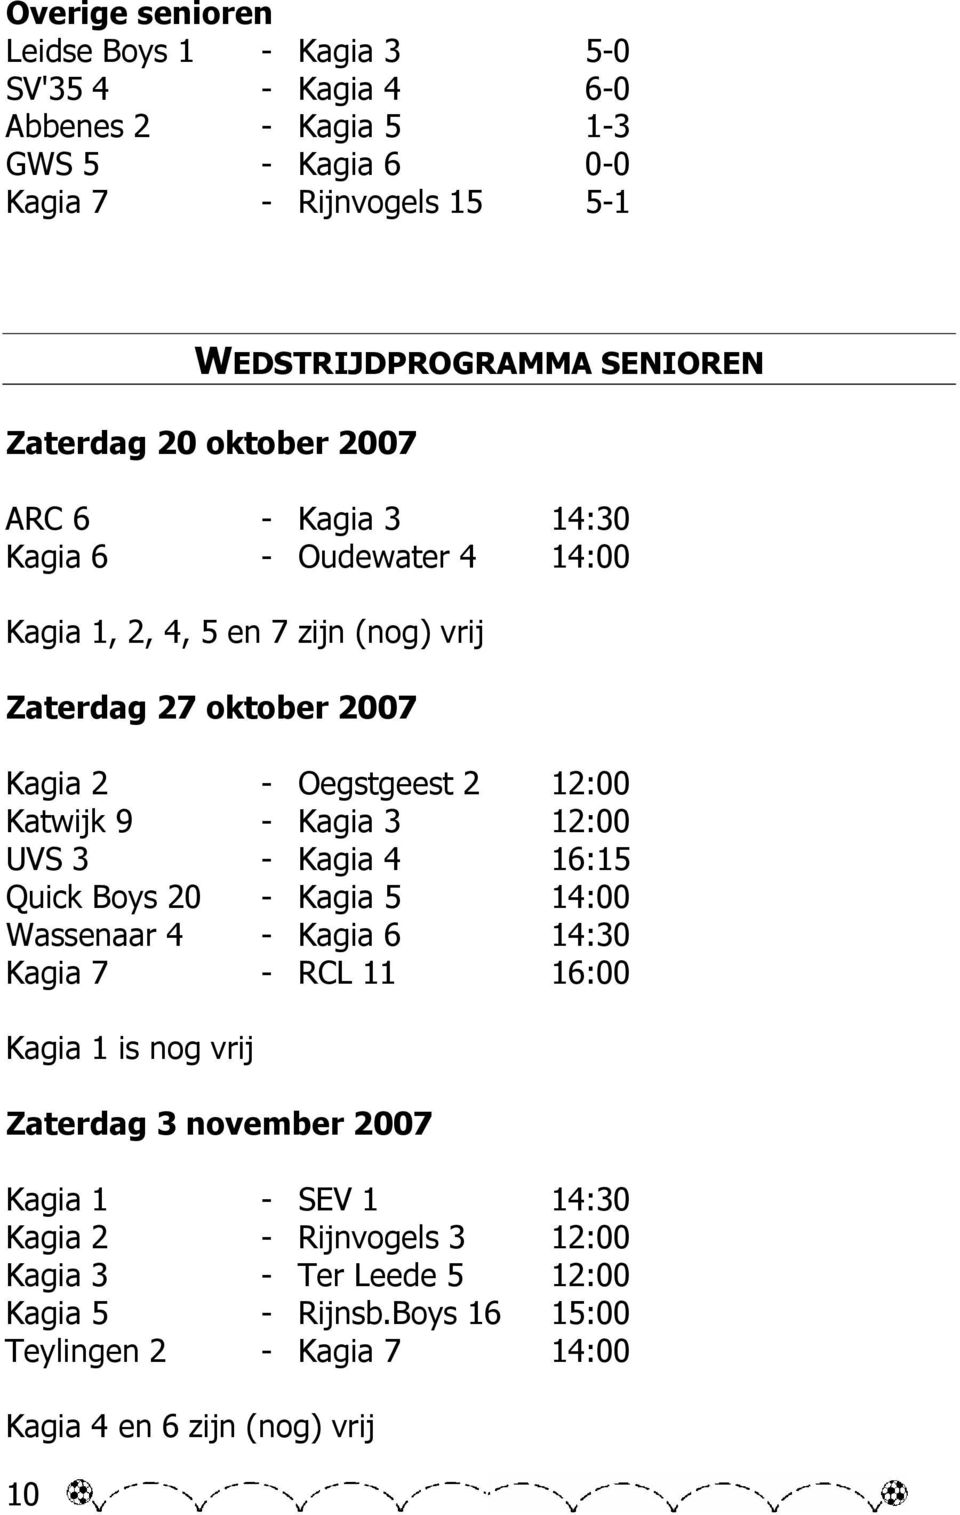 Katwijk 9 - Kagia 3 12:00 UVS 3 - Kagia 4 16:15 Quick Boys 20 - Kagia 5 14:00 Wassenaar 4 - Kagia 6 14:30 Kagia 7 - RCL 11 16:00 Kagia 1 is nog vrij Zaterdag 3 november